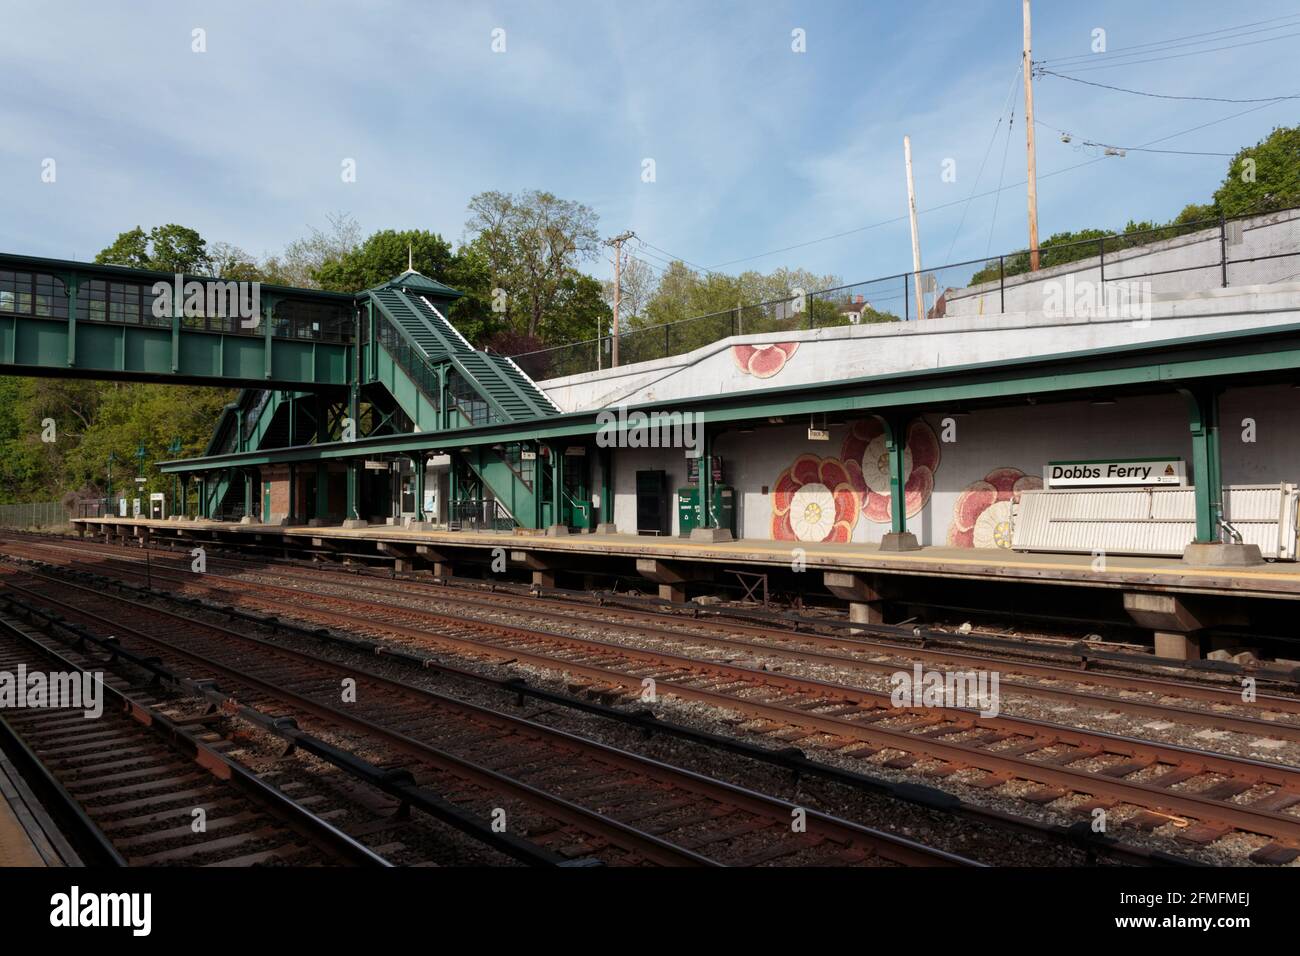 Estación de tren Dobbs Ferry Metro North, pequeña ciudad de transporte en el interior del estado de Nueva York, vista a través de las vías del tren con paso elevado peatonal en el fondo Foto de stock